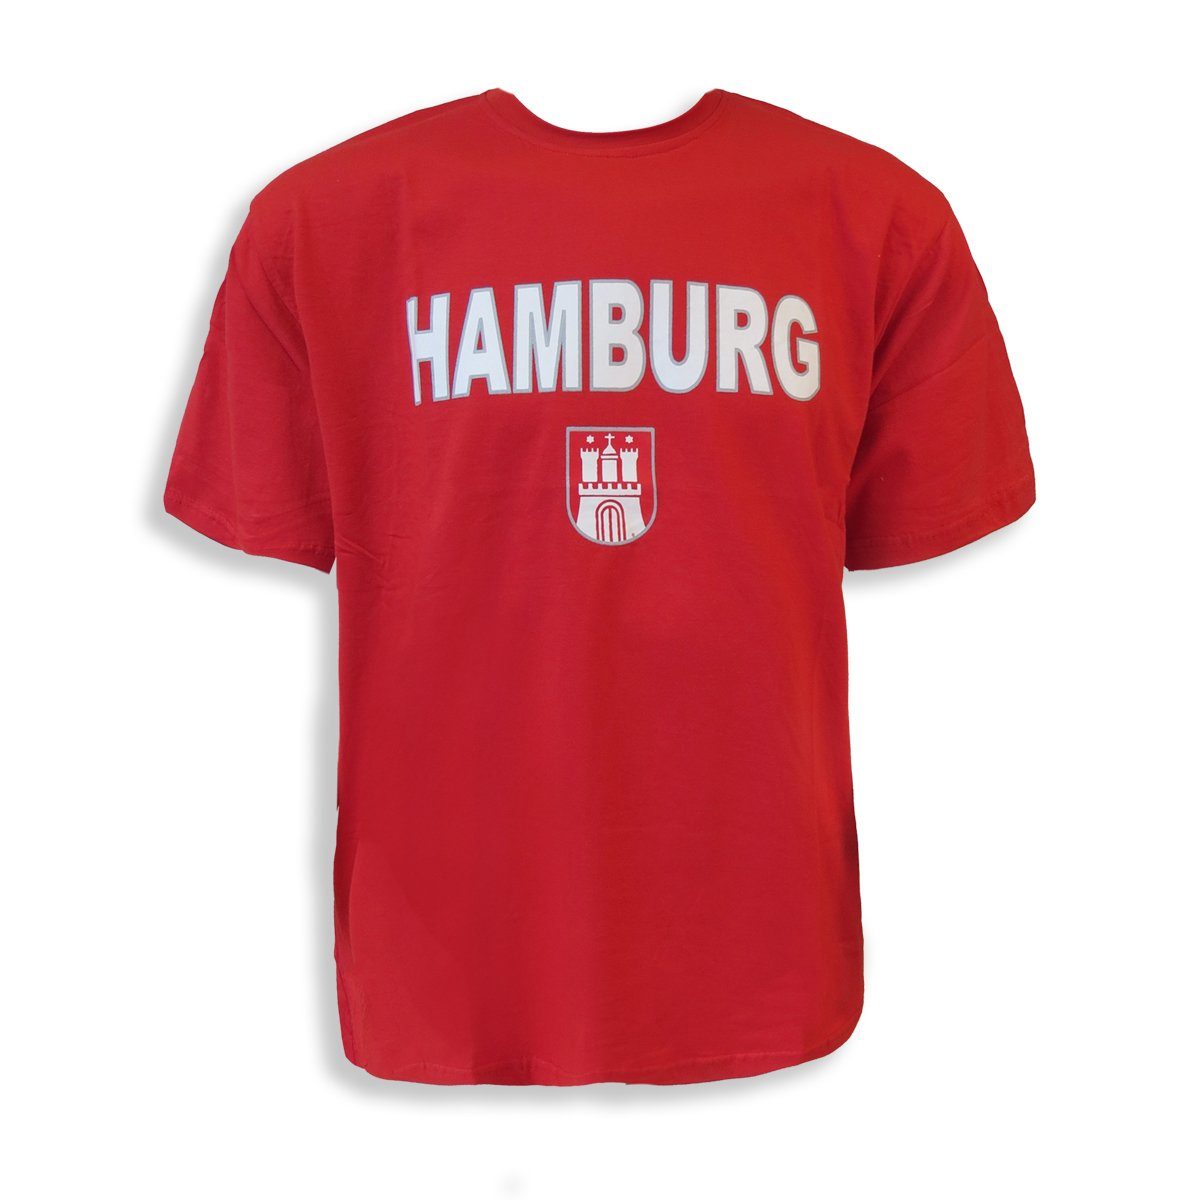 Sonia Originelli Herren Classic" T-Shirt "Hamburg rot T-Shirt Wappen Baumwolle